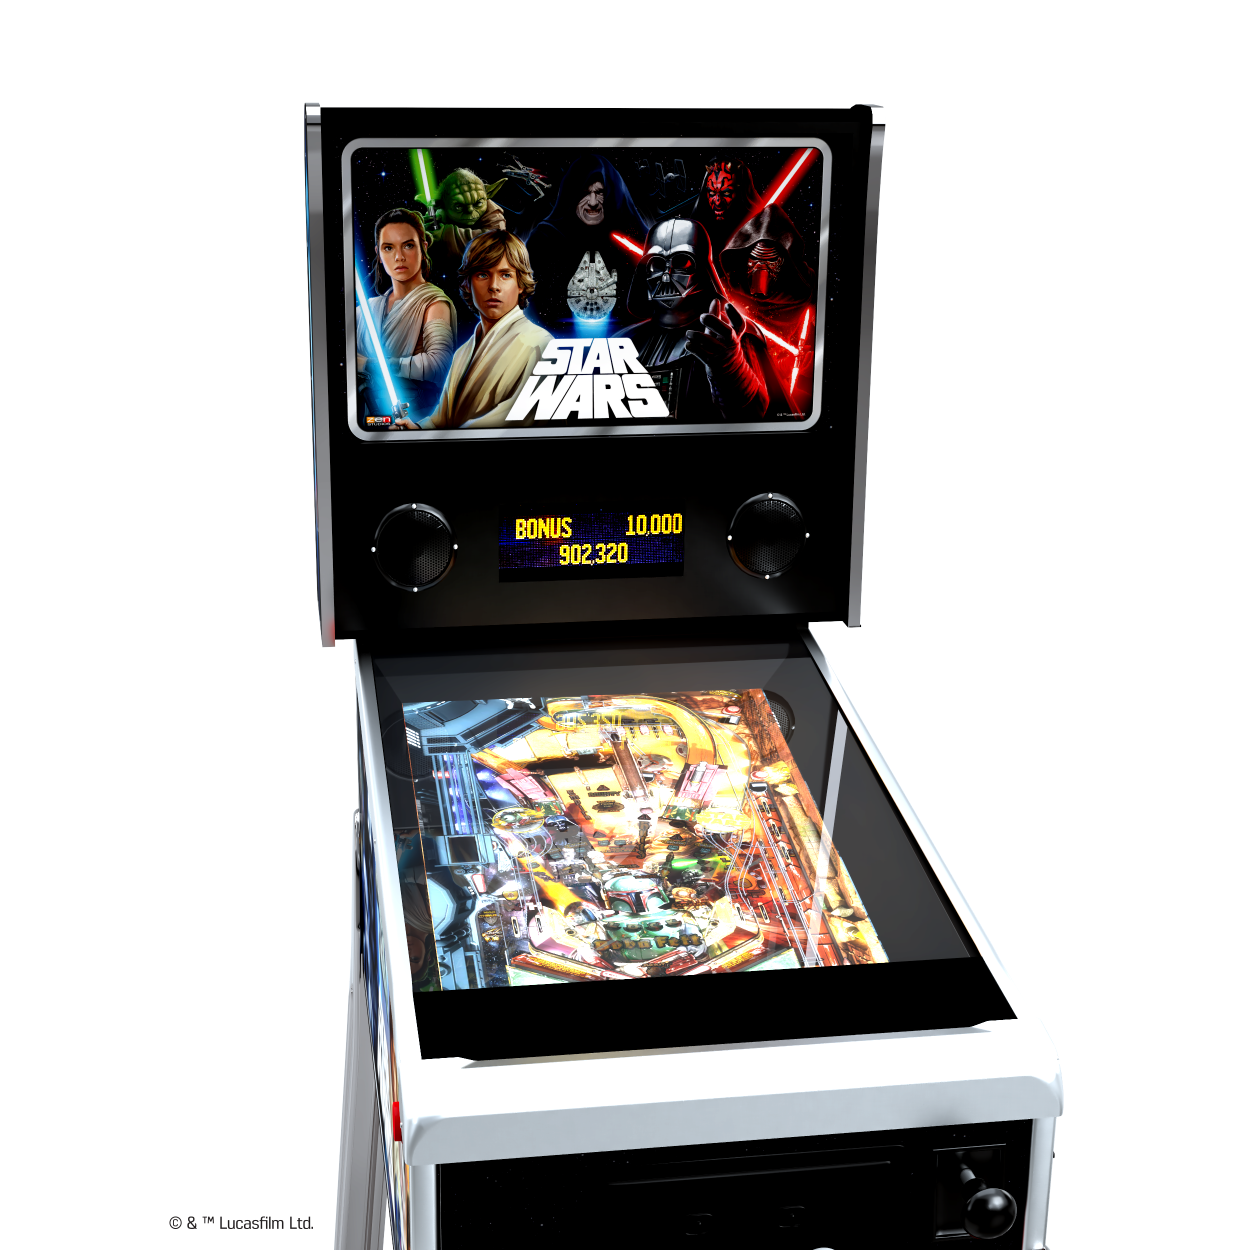 Star Wars pinball machine gameplay